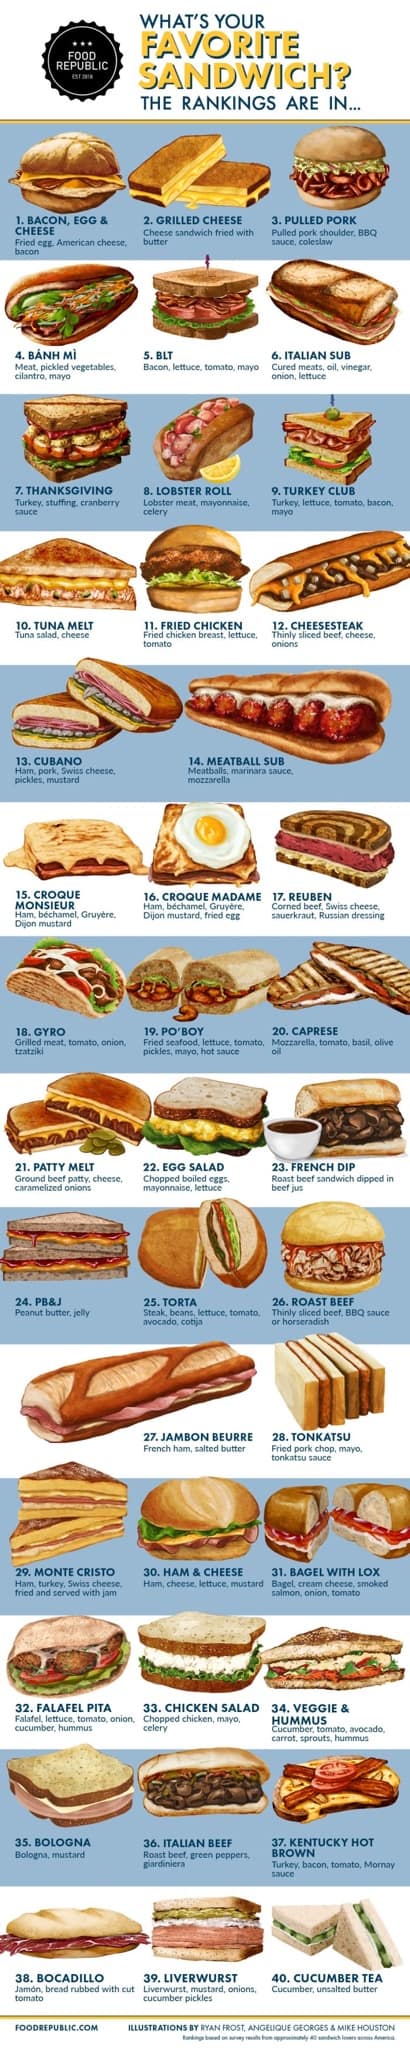 Sandwich heaven